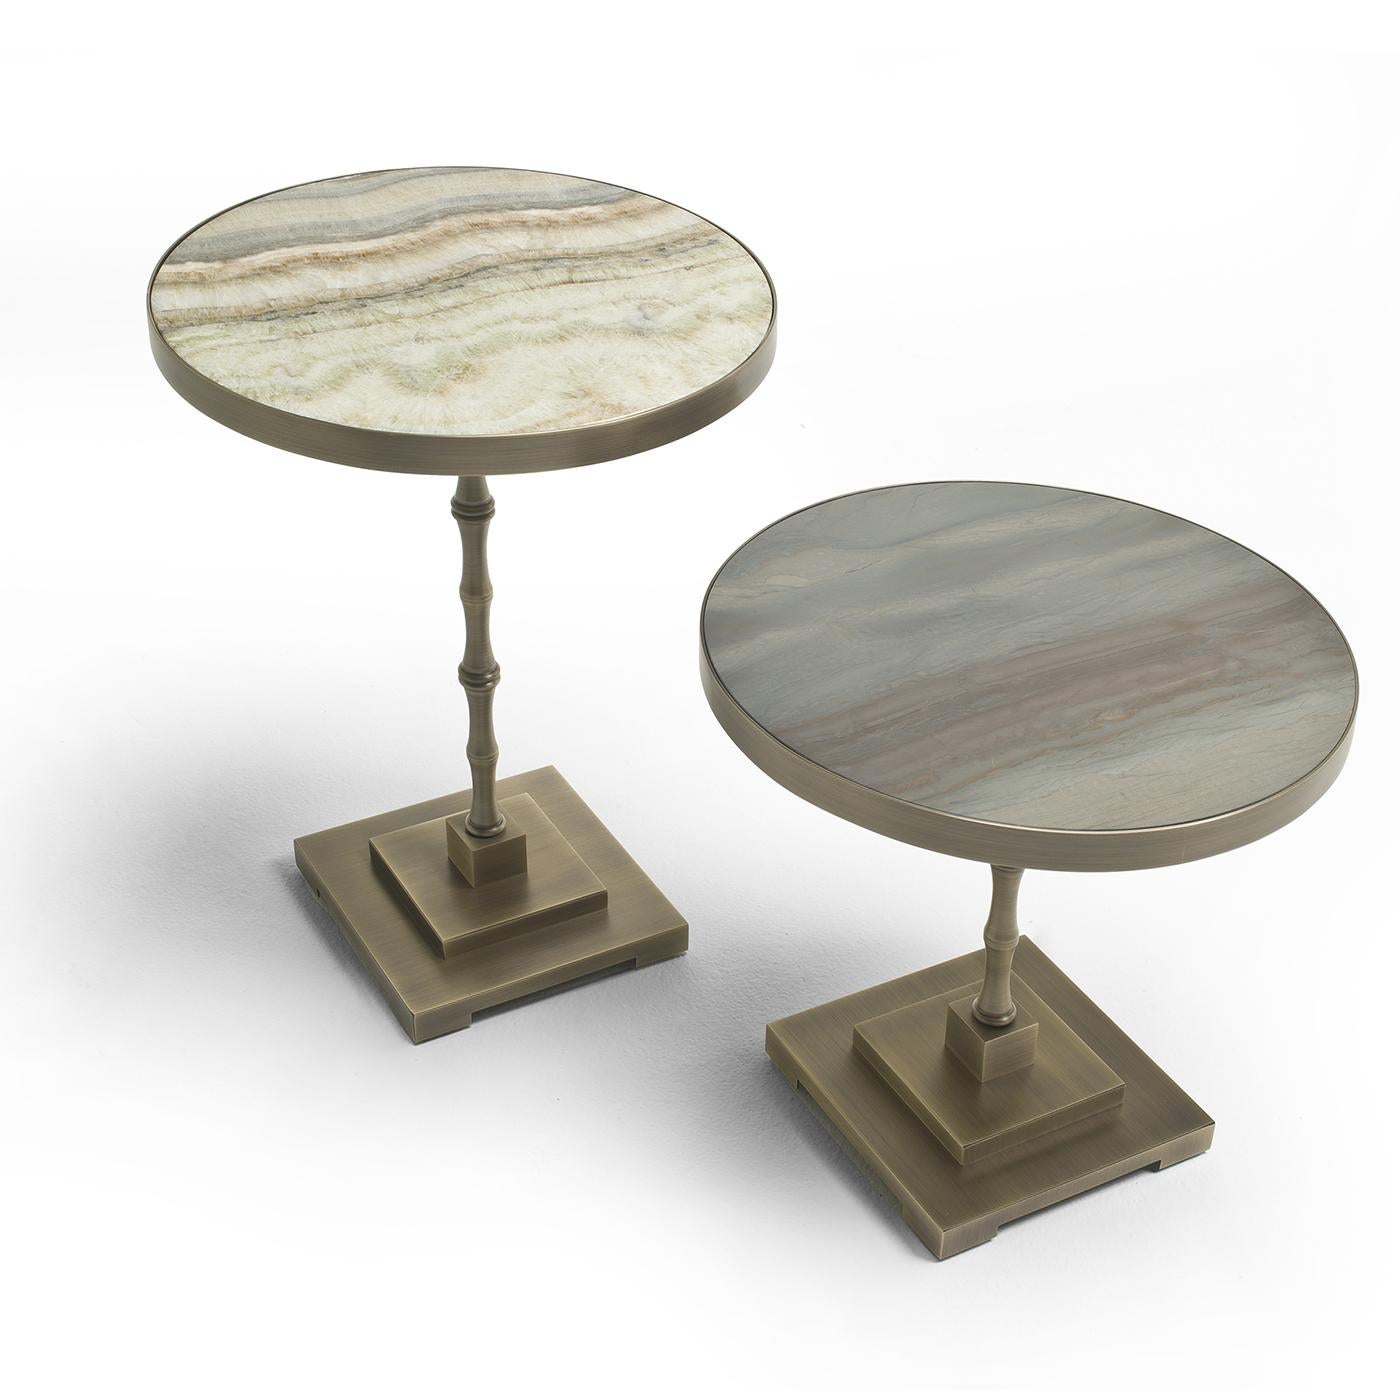 Un monde d'inspirations se réunit dans la table d'appoint Marmora. Sur une base carrée empilée, la table repose sur une tige inspirée du bambou et est surmontée d'une surface ronde. Le plateau de table est en marbre onyx avec une finition polie au